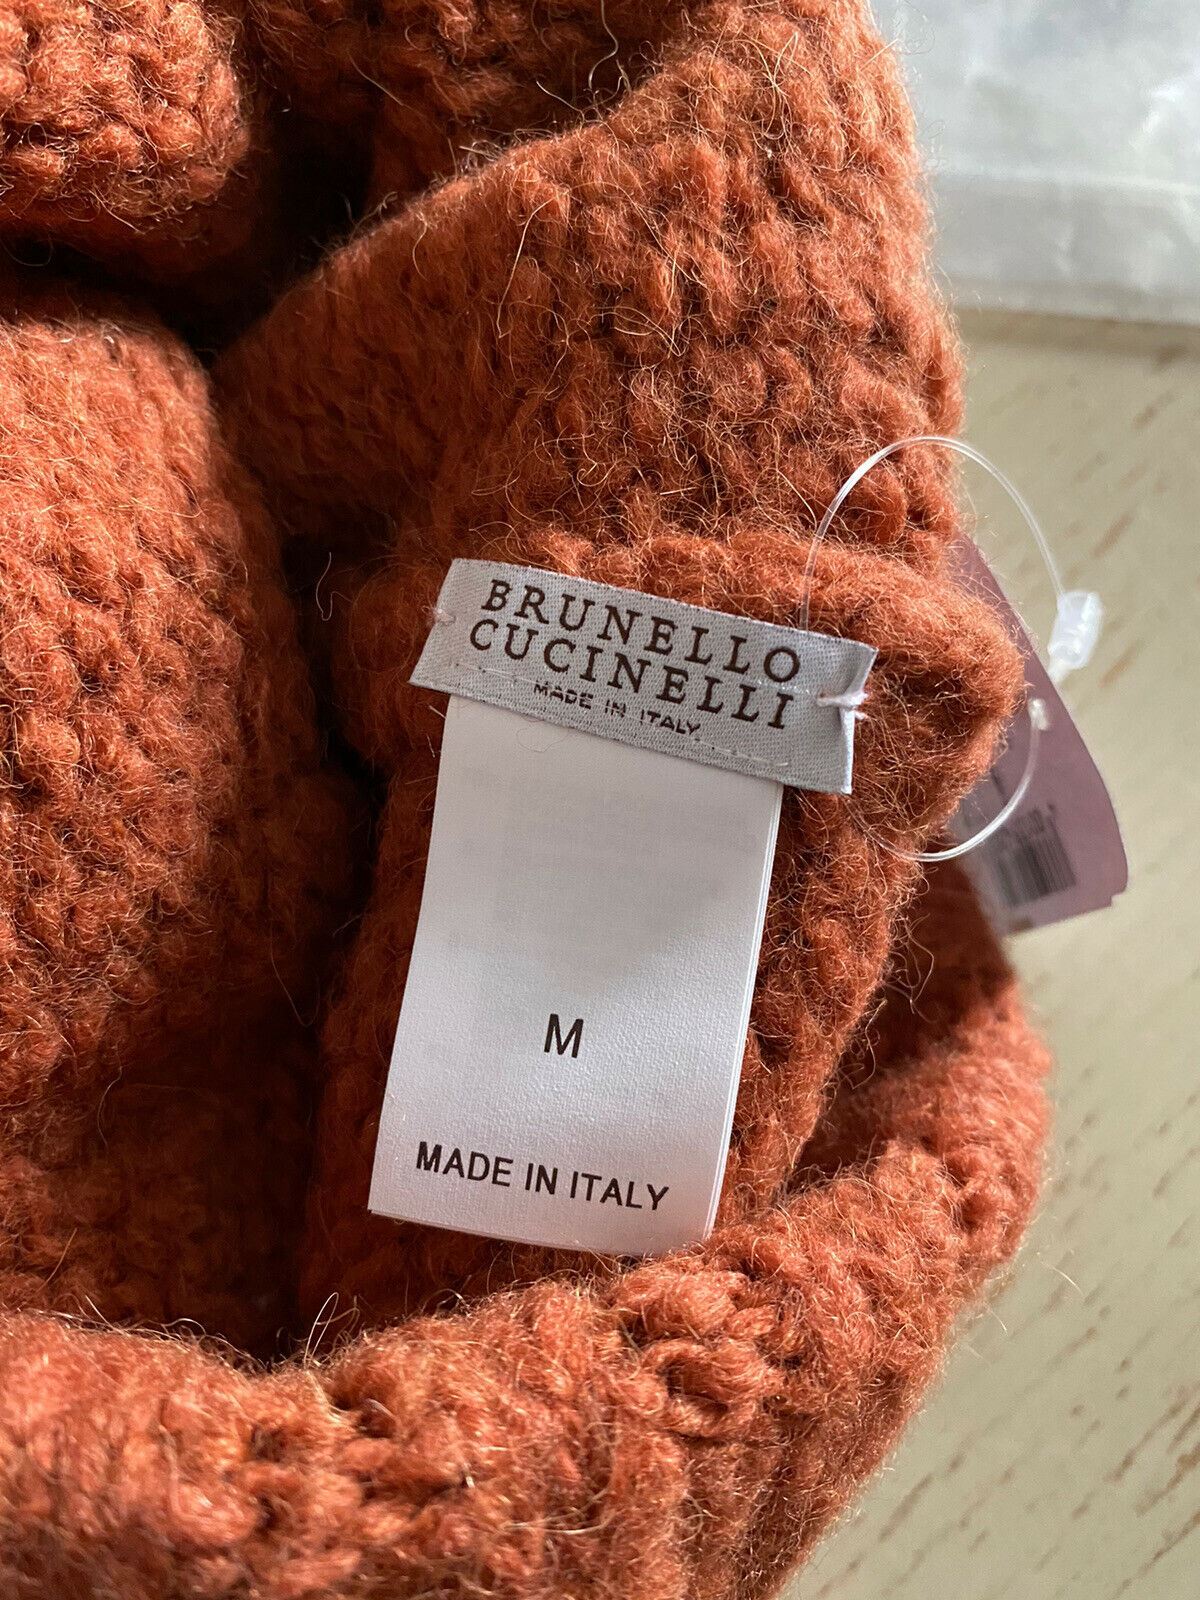 Neu mit Etikett: Brunello Cucinelli Damen-Mütze aus Alpaka-Wollmischung, bernsteinfarbene orangefarbene Mütze, M, Italien